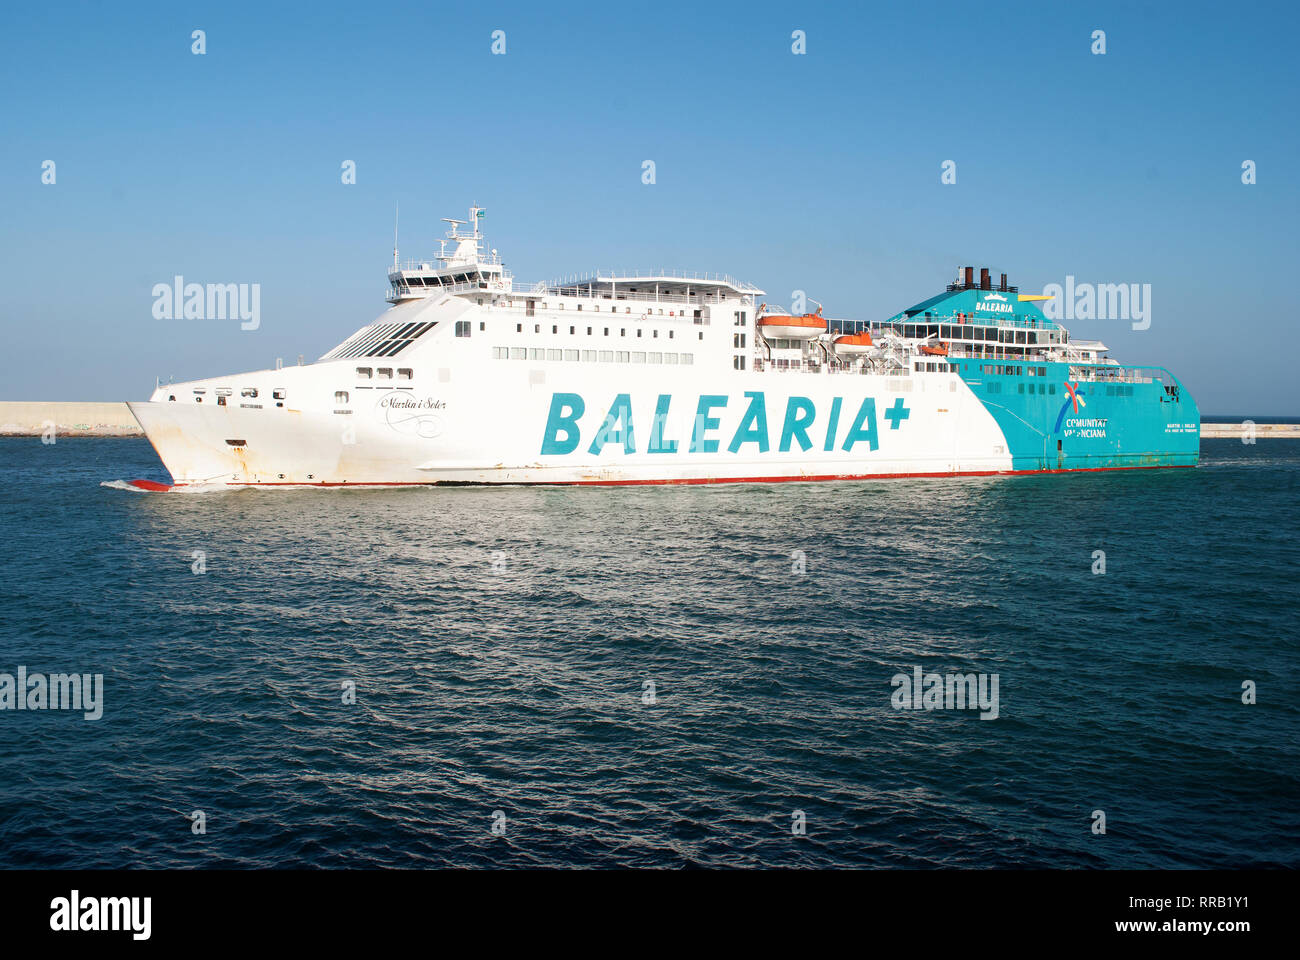 Traghetto Martín i Soler della società Balearia entrando nel porto di Barcellona. Il 11 maggio 2018. Foto Stock